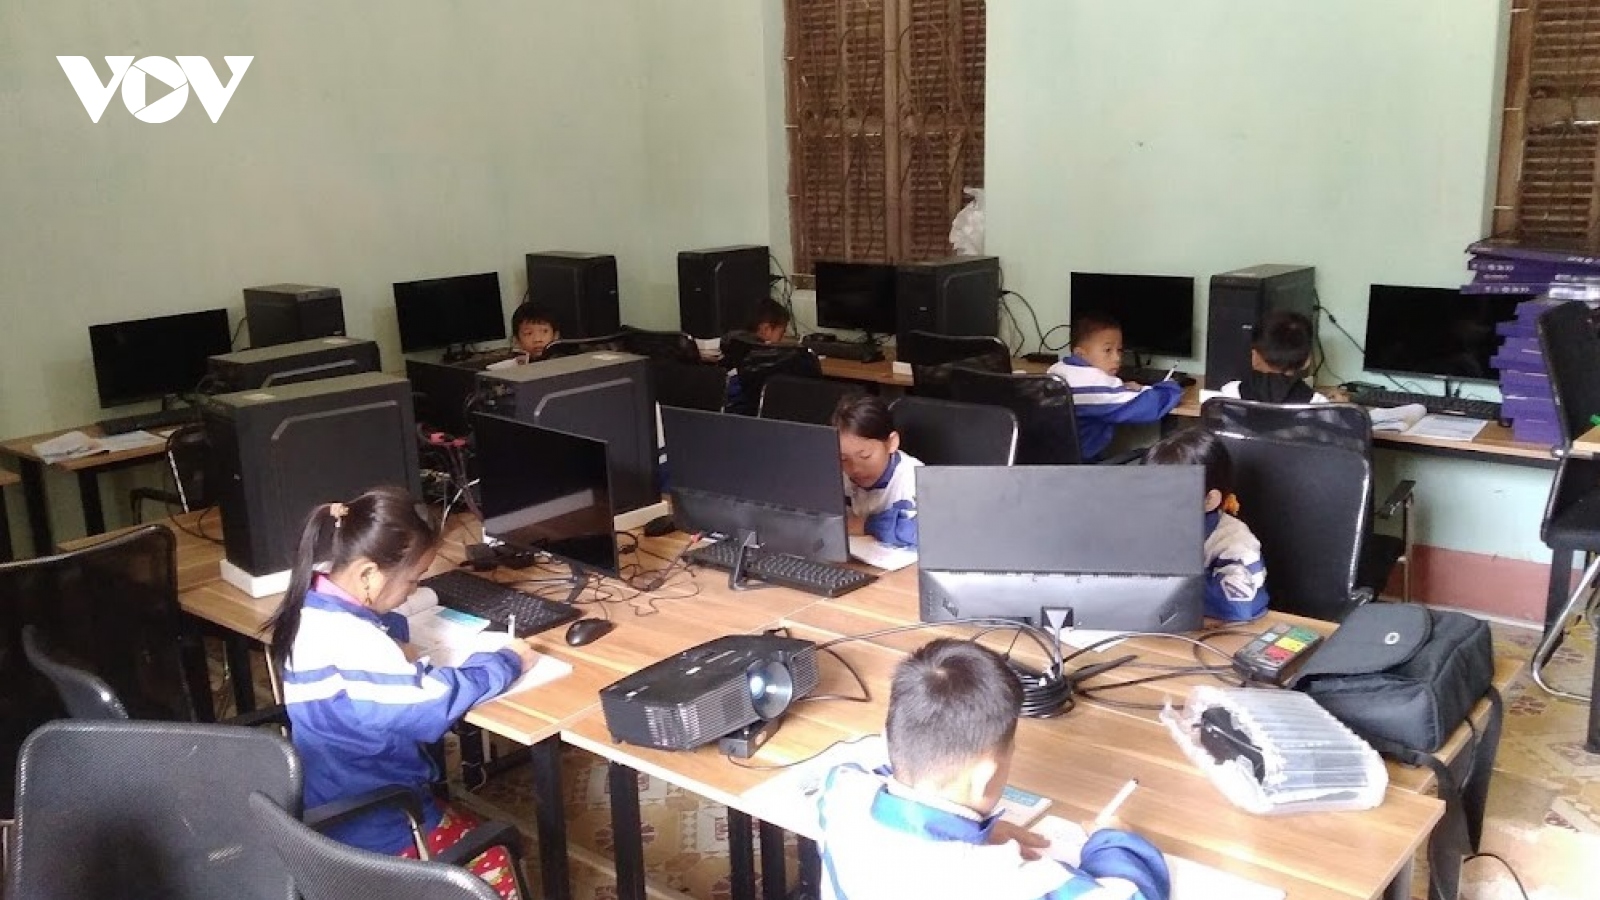 Sóng và máy tính cho em - Ước mơ của học sinh nghèo xứ Lạng